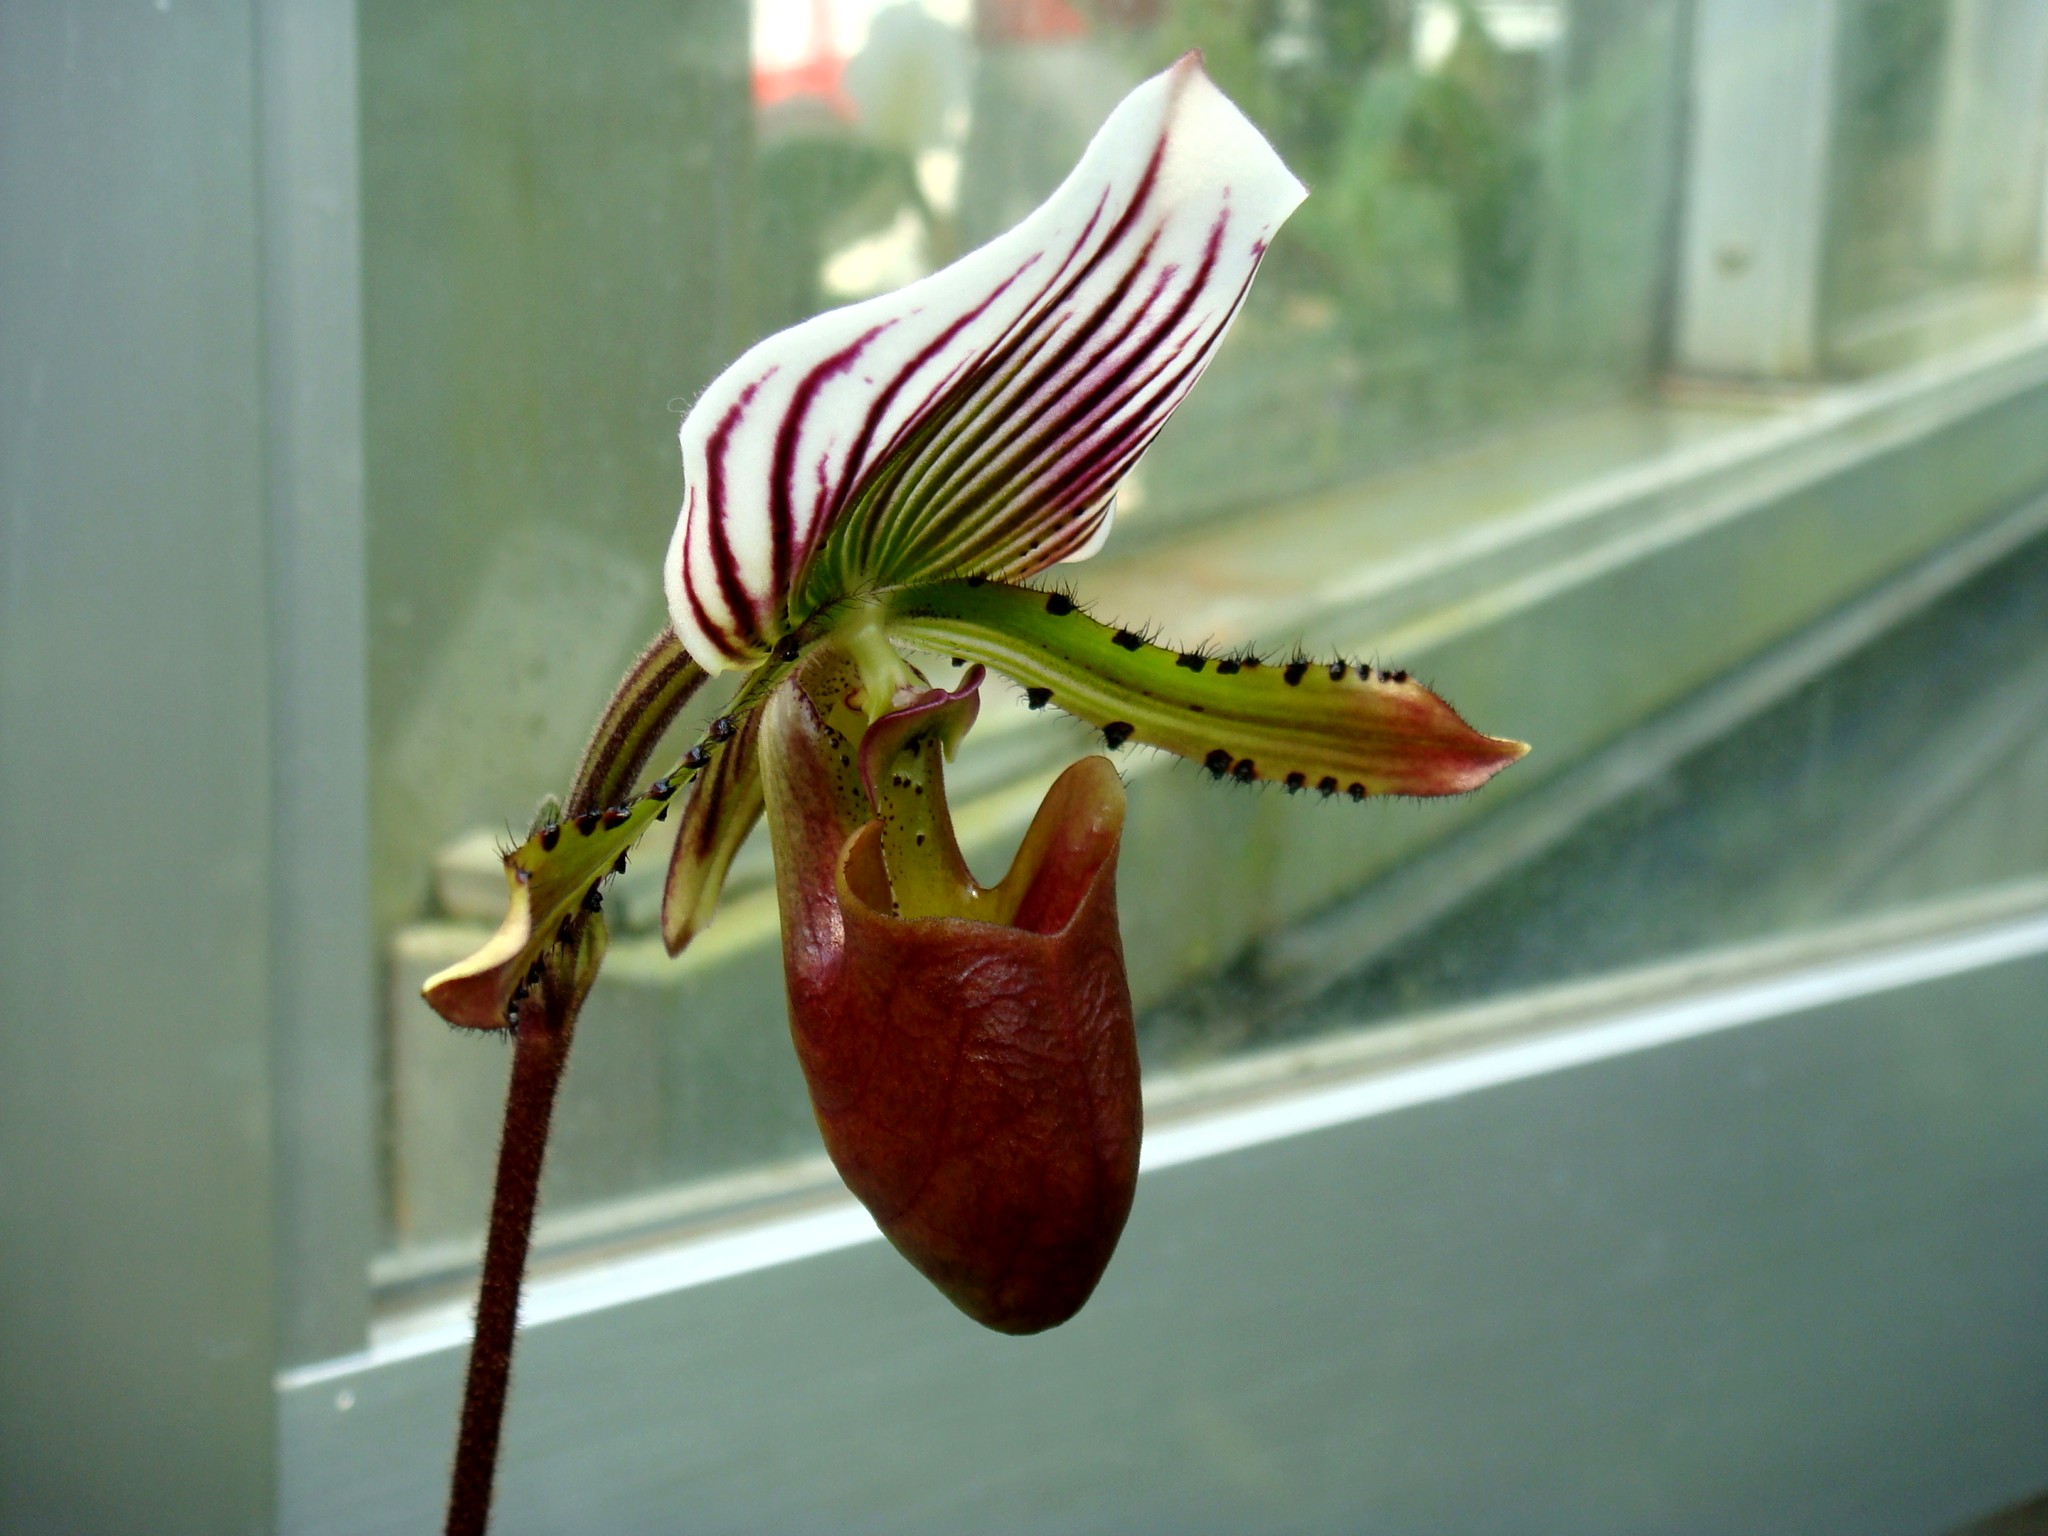 http://orchids.la.coocan.jp/Paphiopedilum/Paphiopedilum%20lawrenceanum/DSC05642.JPG